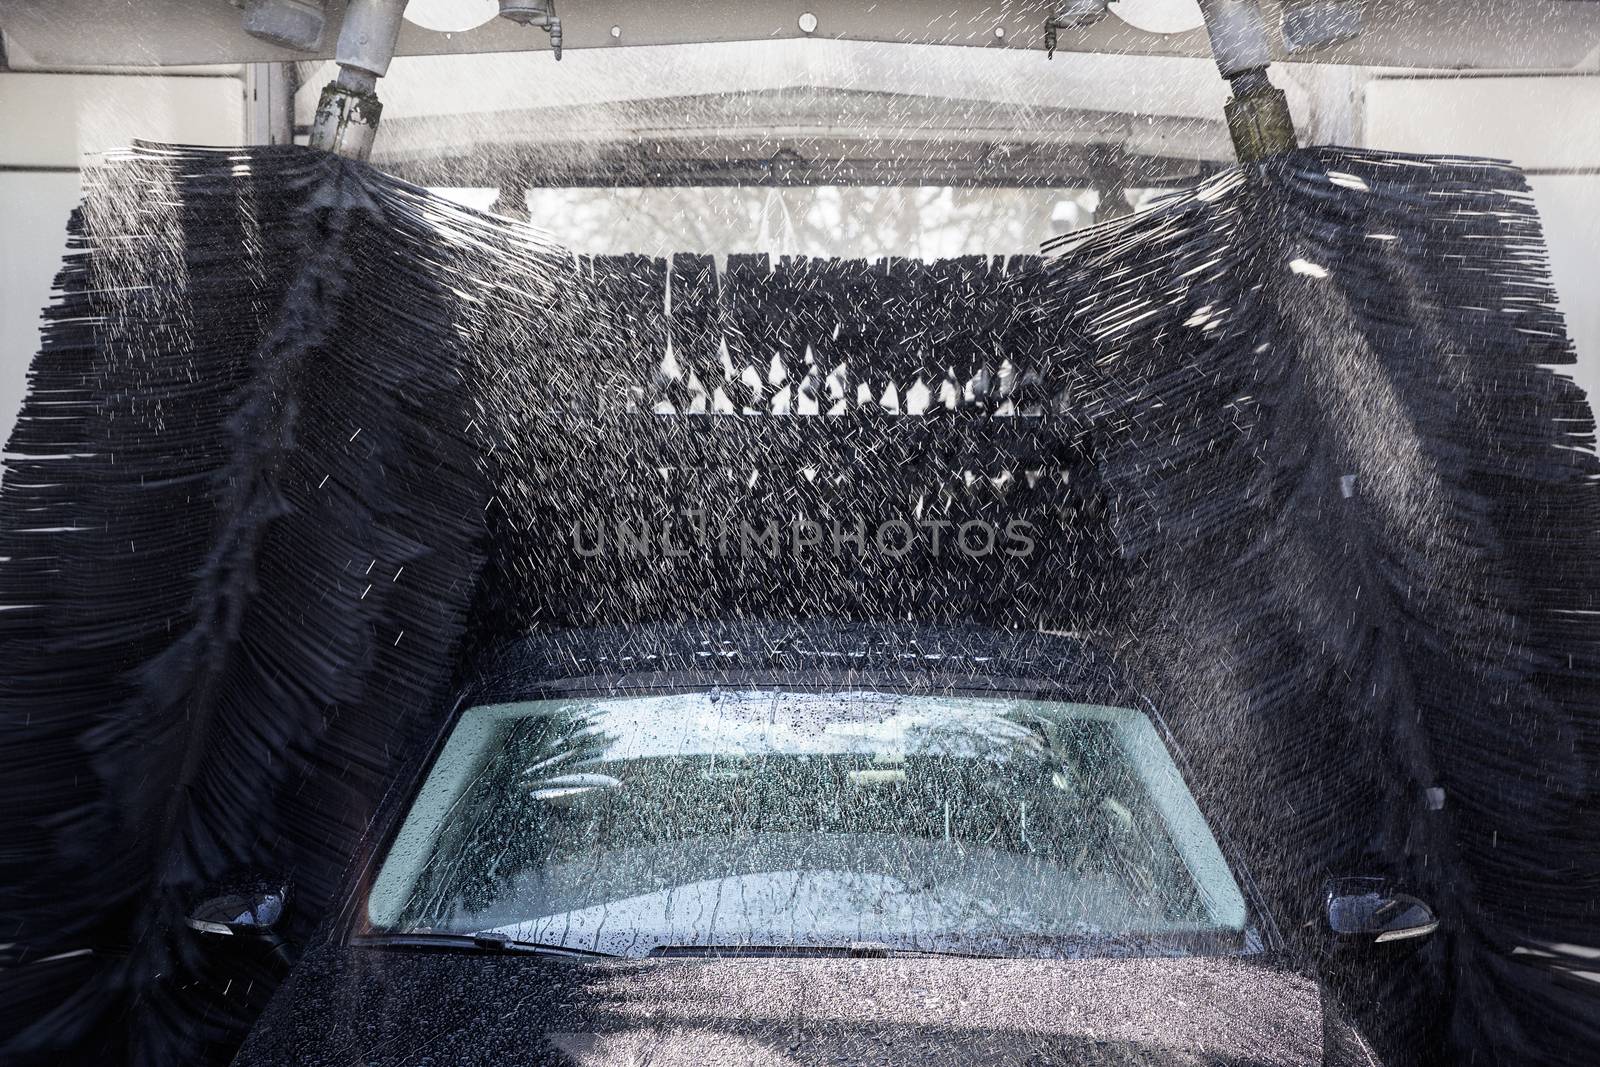 Car during washing process